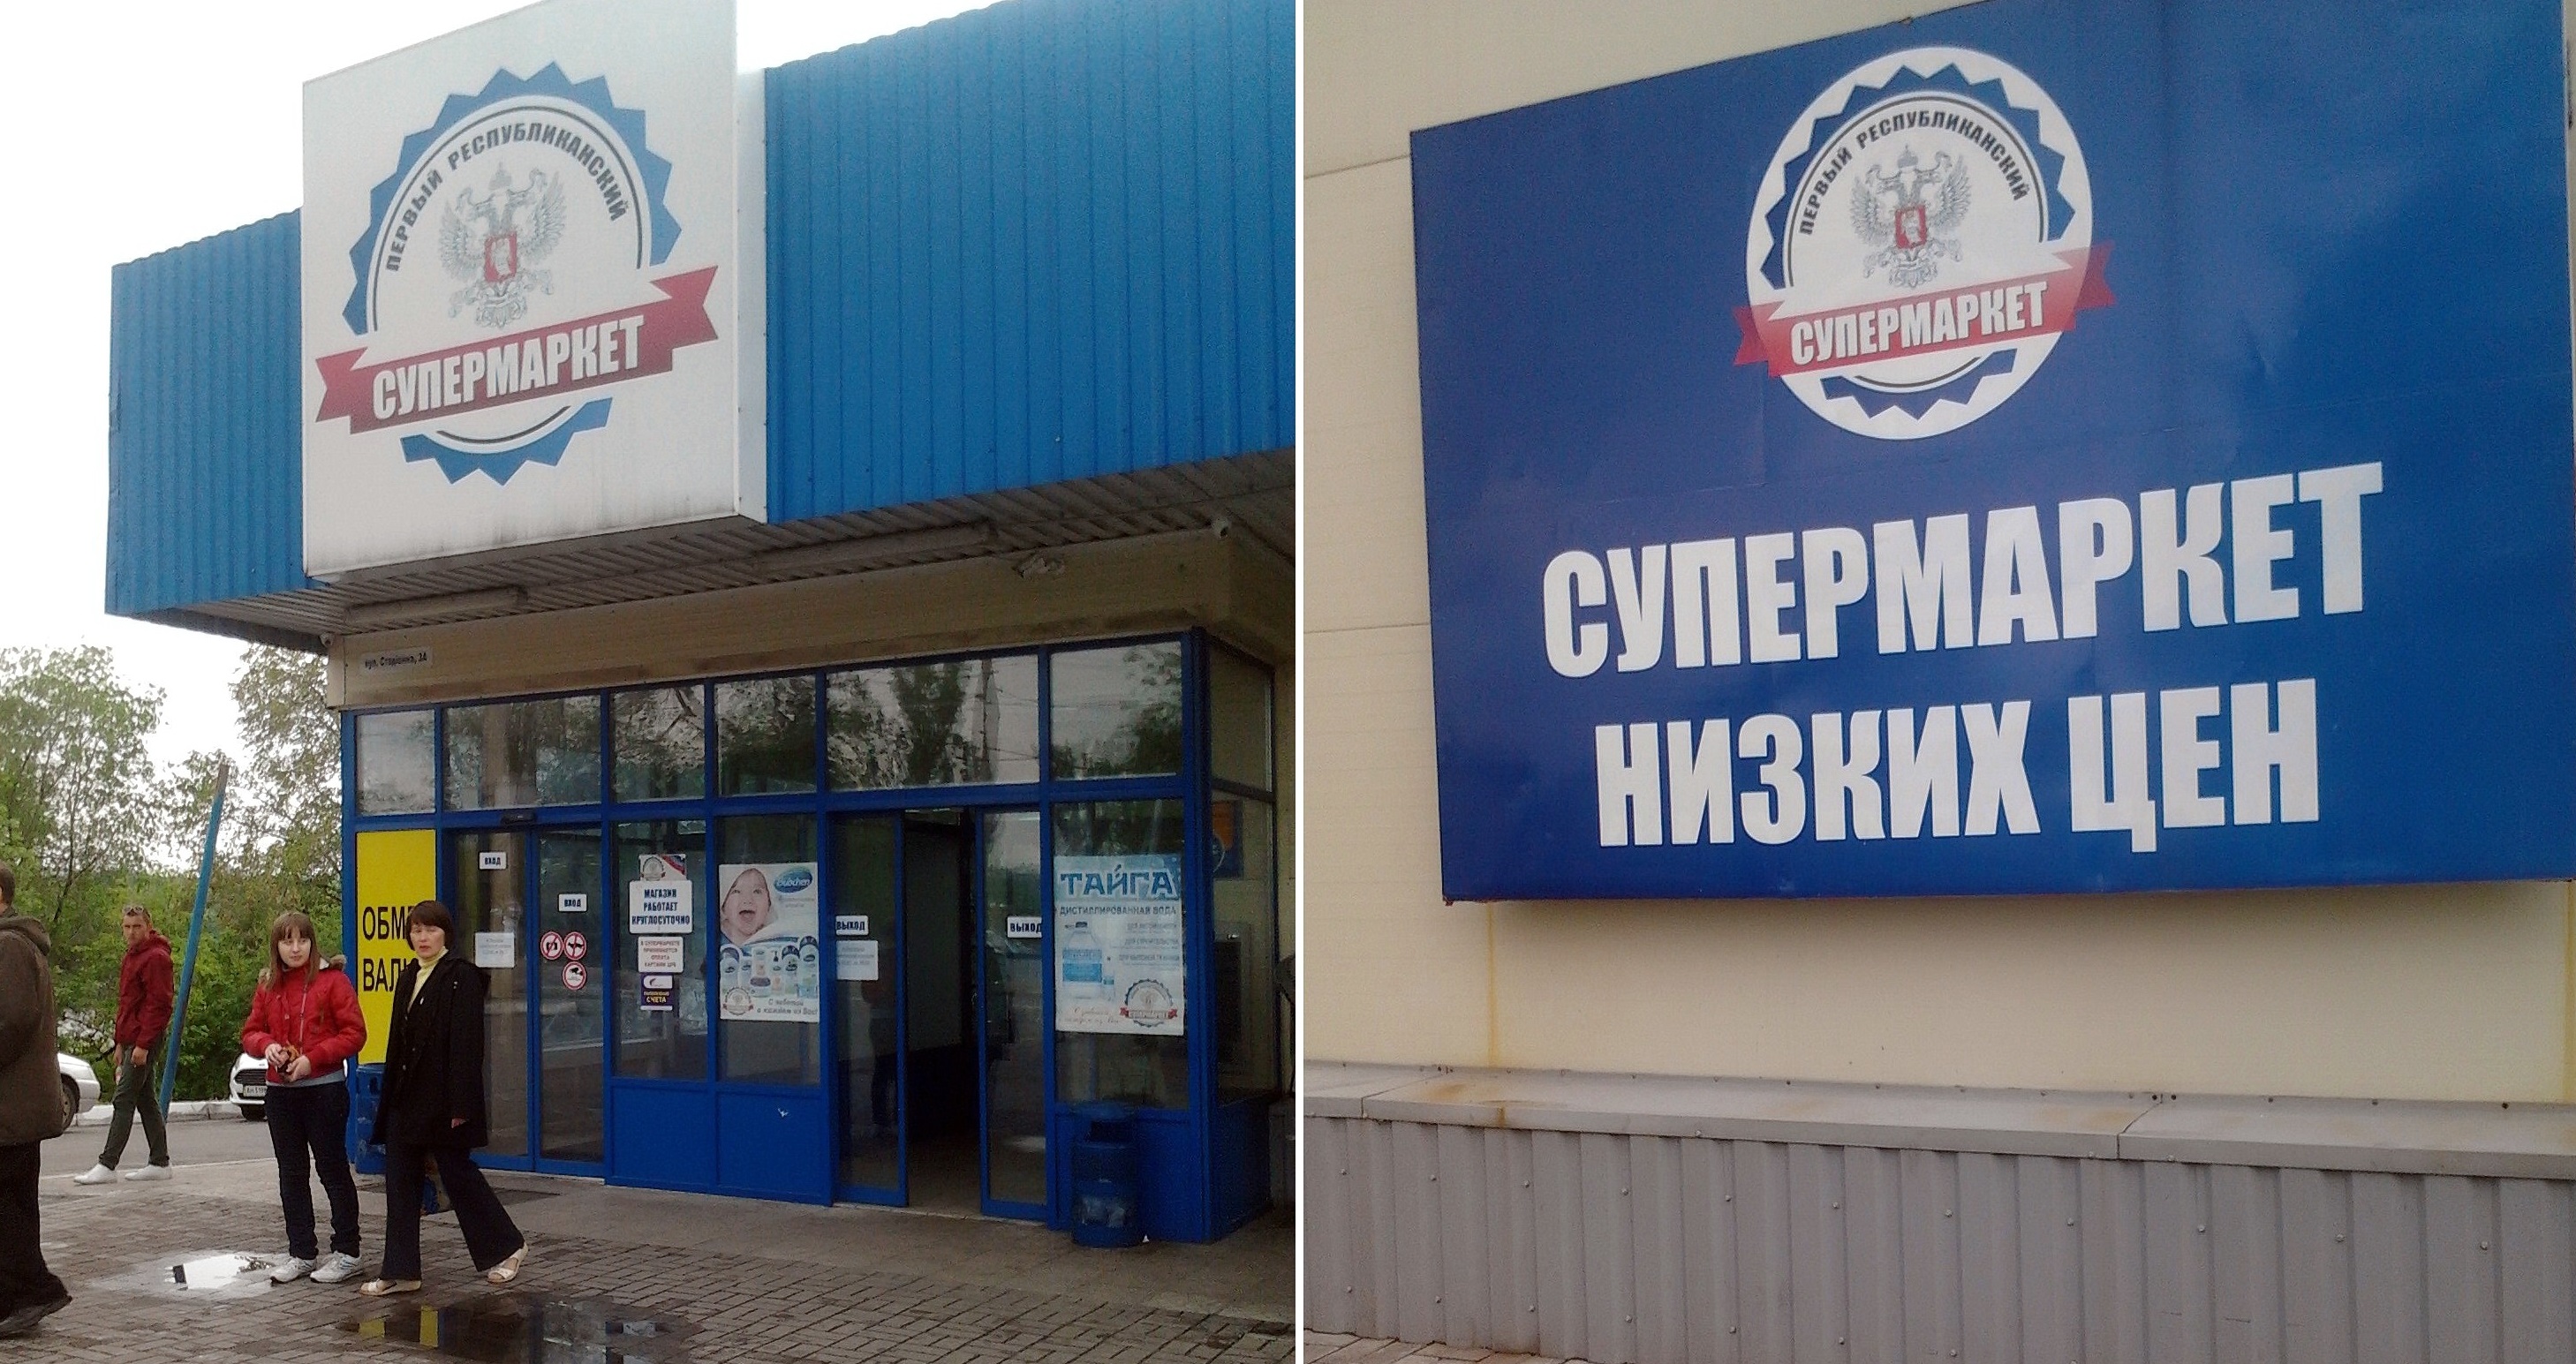 Террористы из России на Донбассе отжимали супермаркеты "АТБ" и делали "ПРС", - экс-мэр рассказал подробности бандитской деятельности главарей "ДНР"